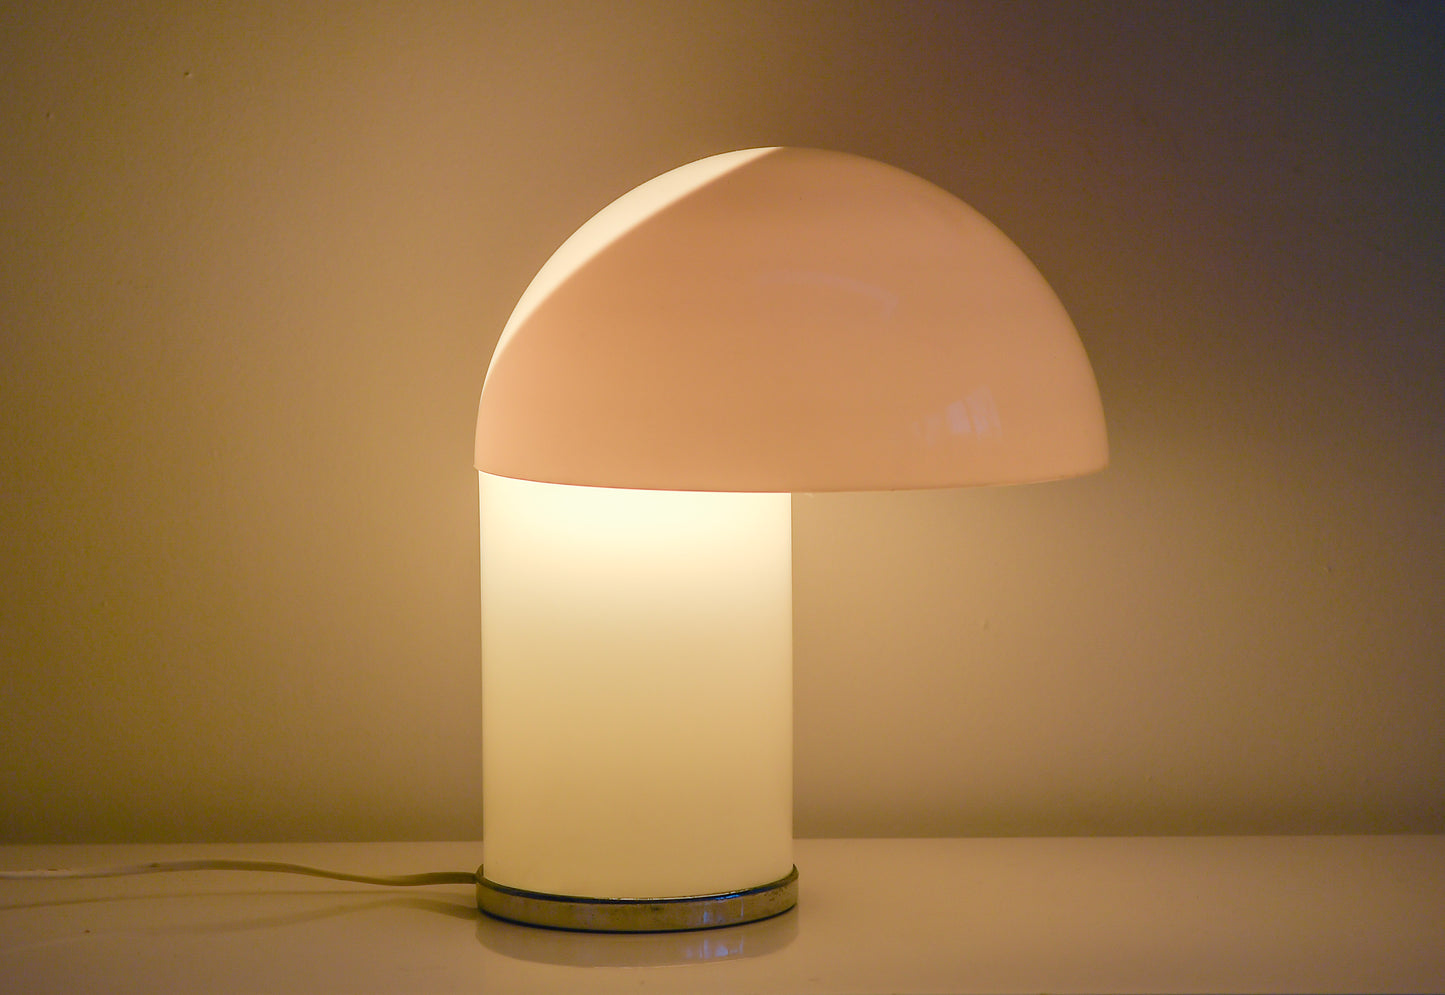 Rare Leila table lamp designed by Verner Panton and Marcello Siard for Collezioni Longato Padova, Italy.